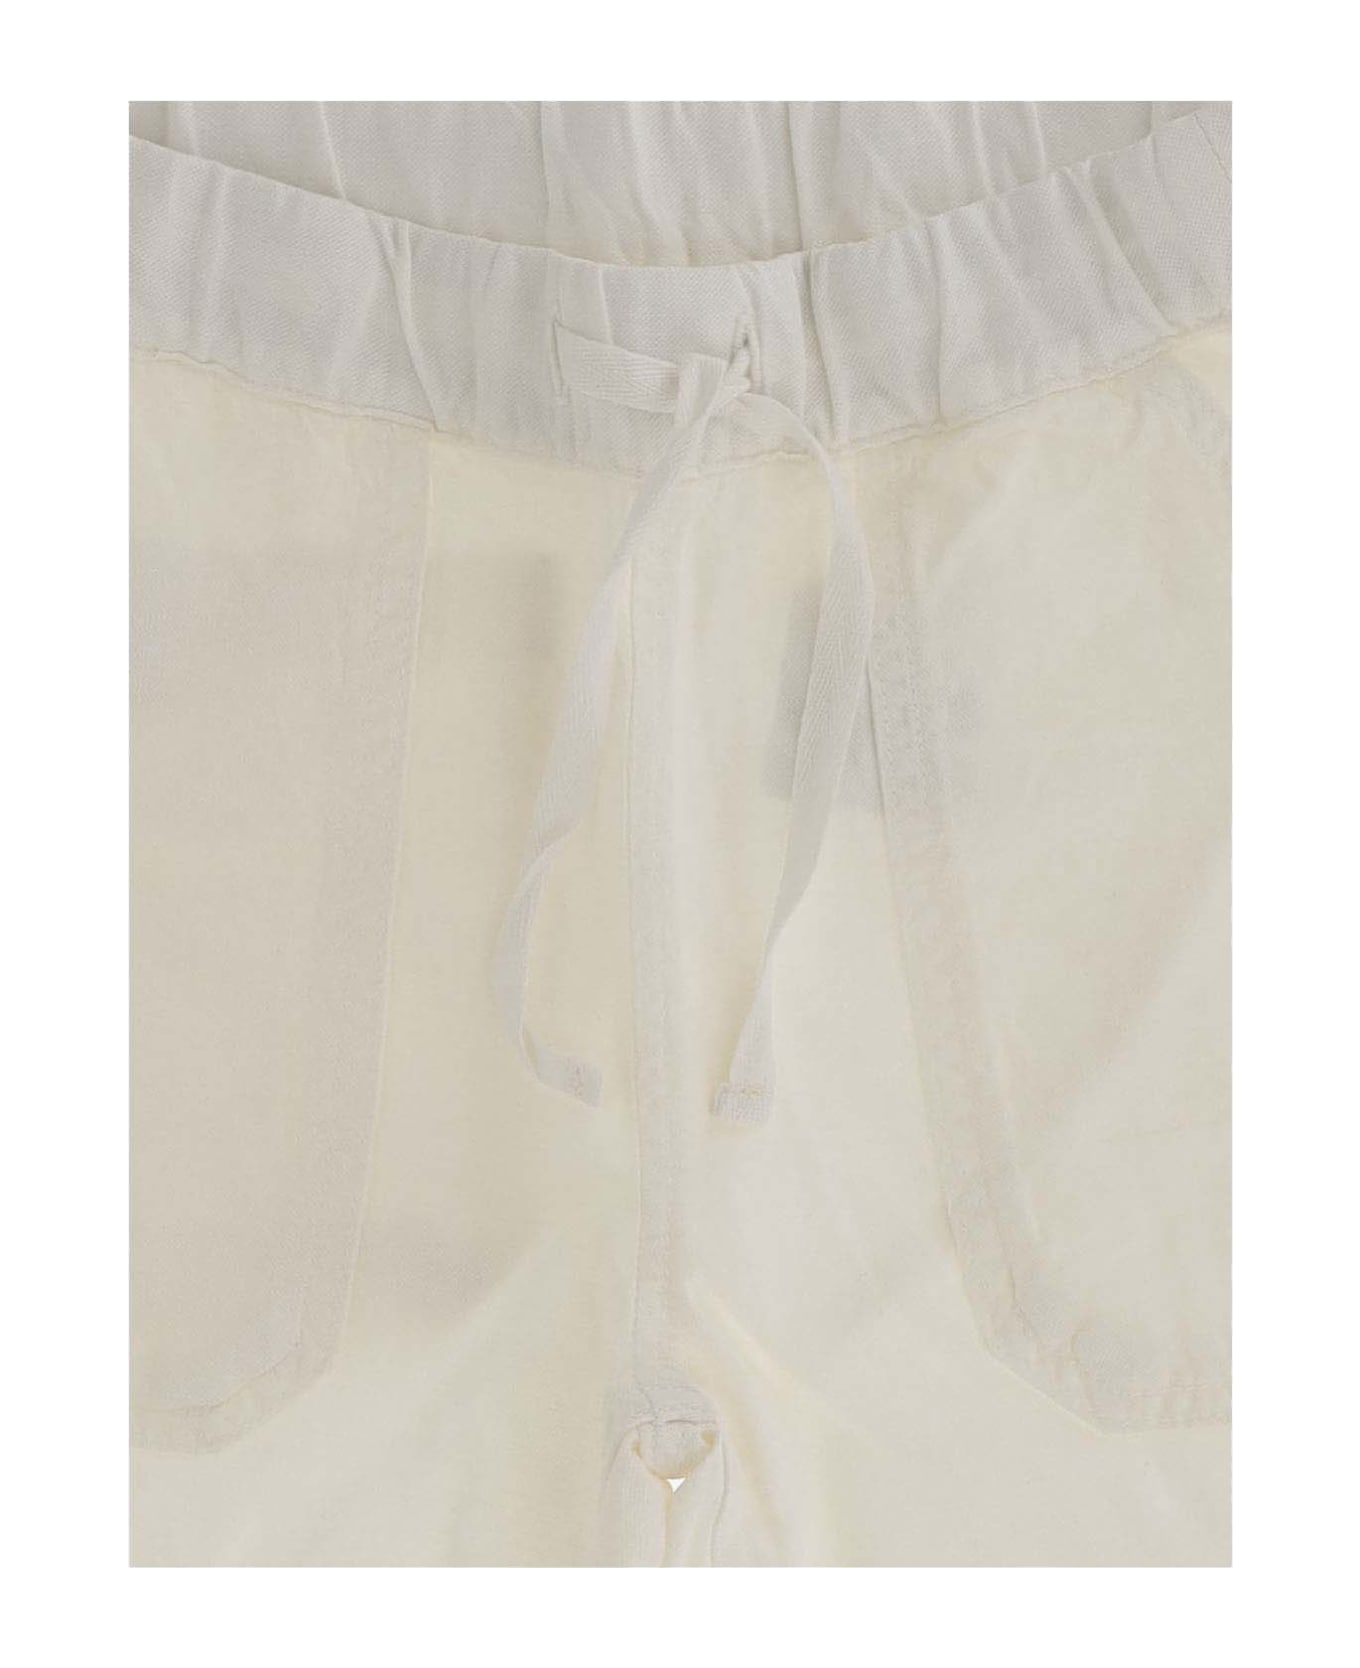 Bonpoint Lyocell Blend Shorts - White ボトムス